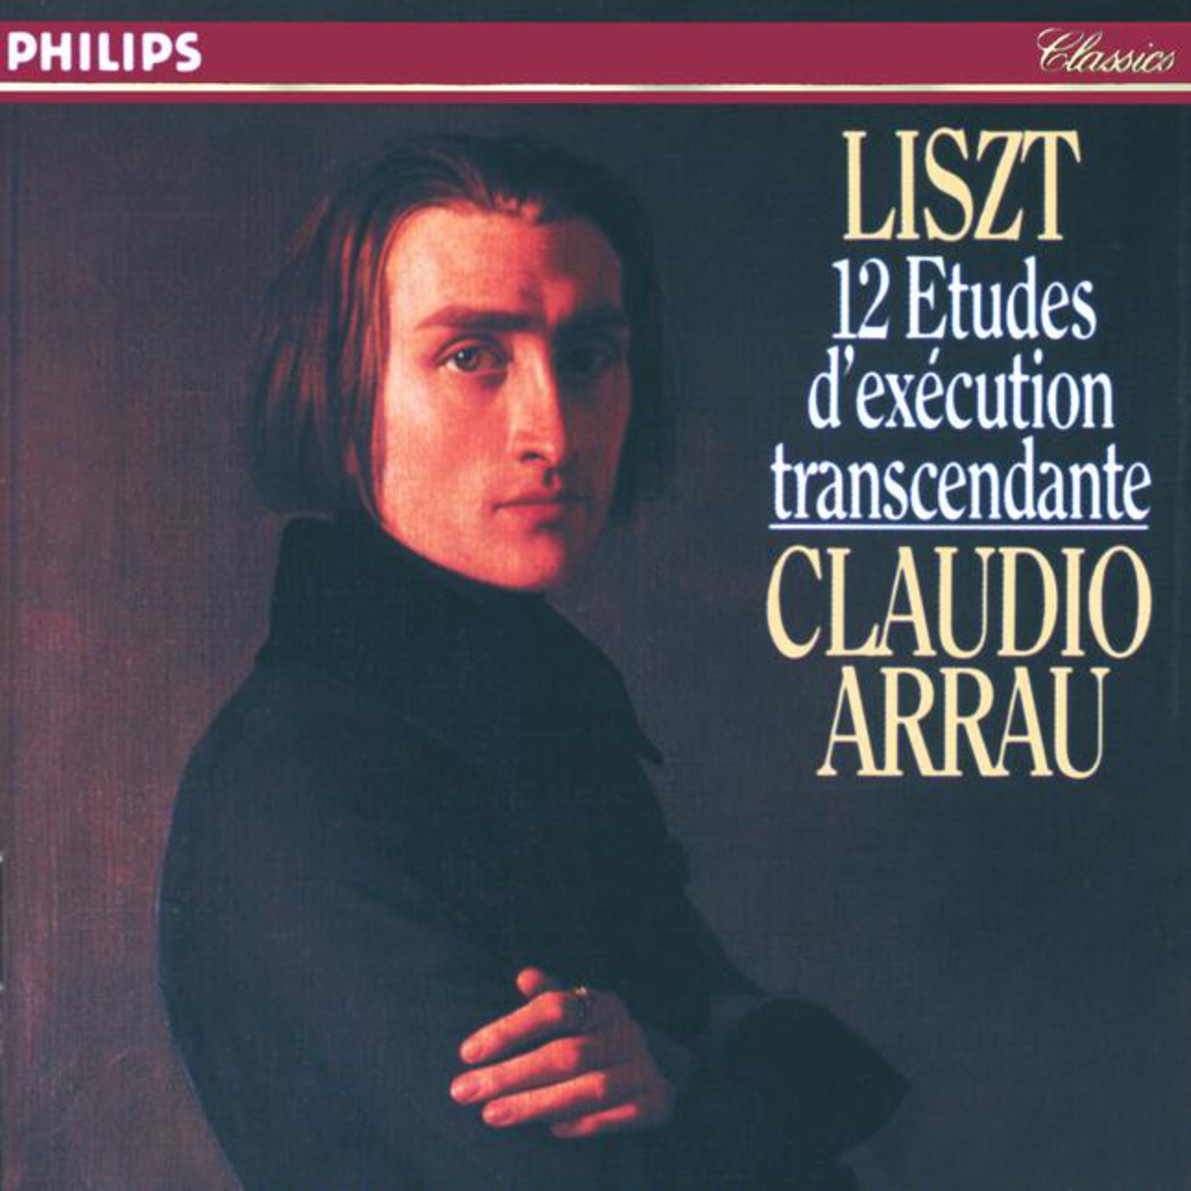 Liszt: 12 Etudes d' exe cution transcendante